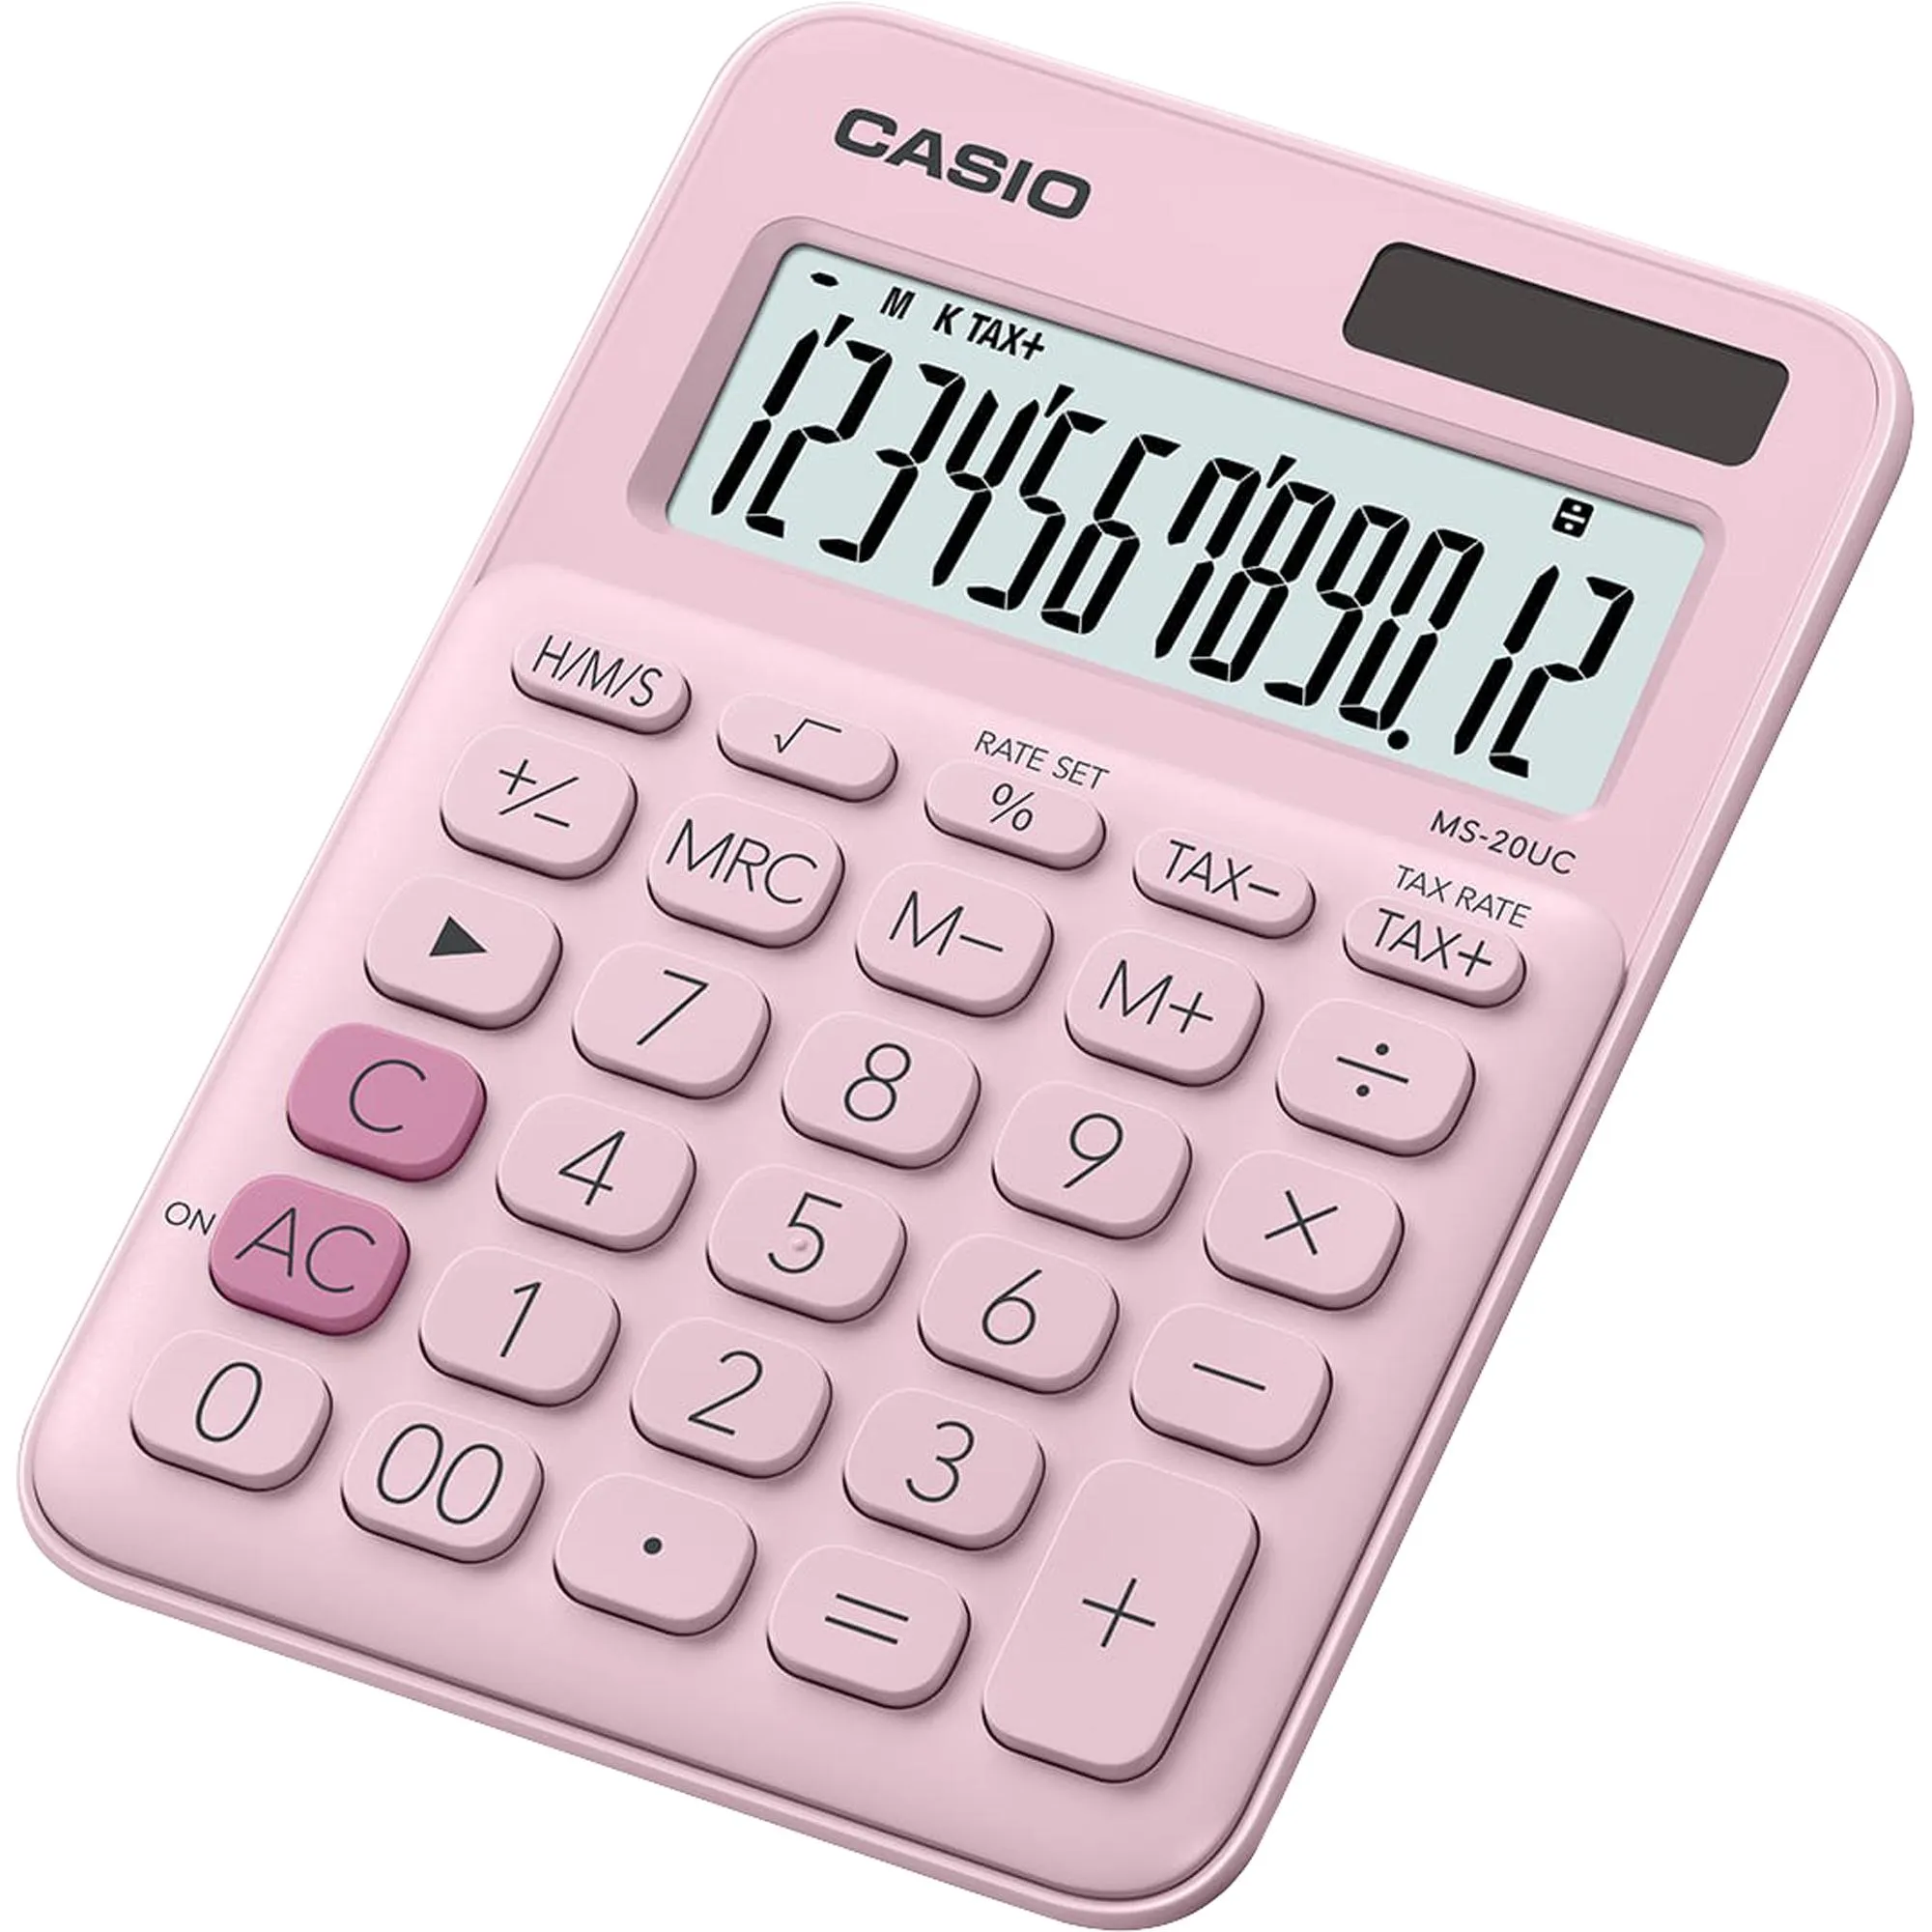 Calculadora de Mesa Casio MS20UC 12 Dígitos Rosa Claro (83719)